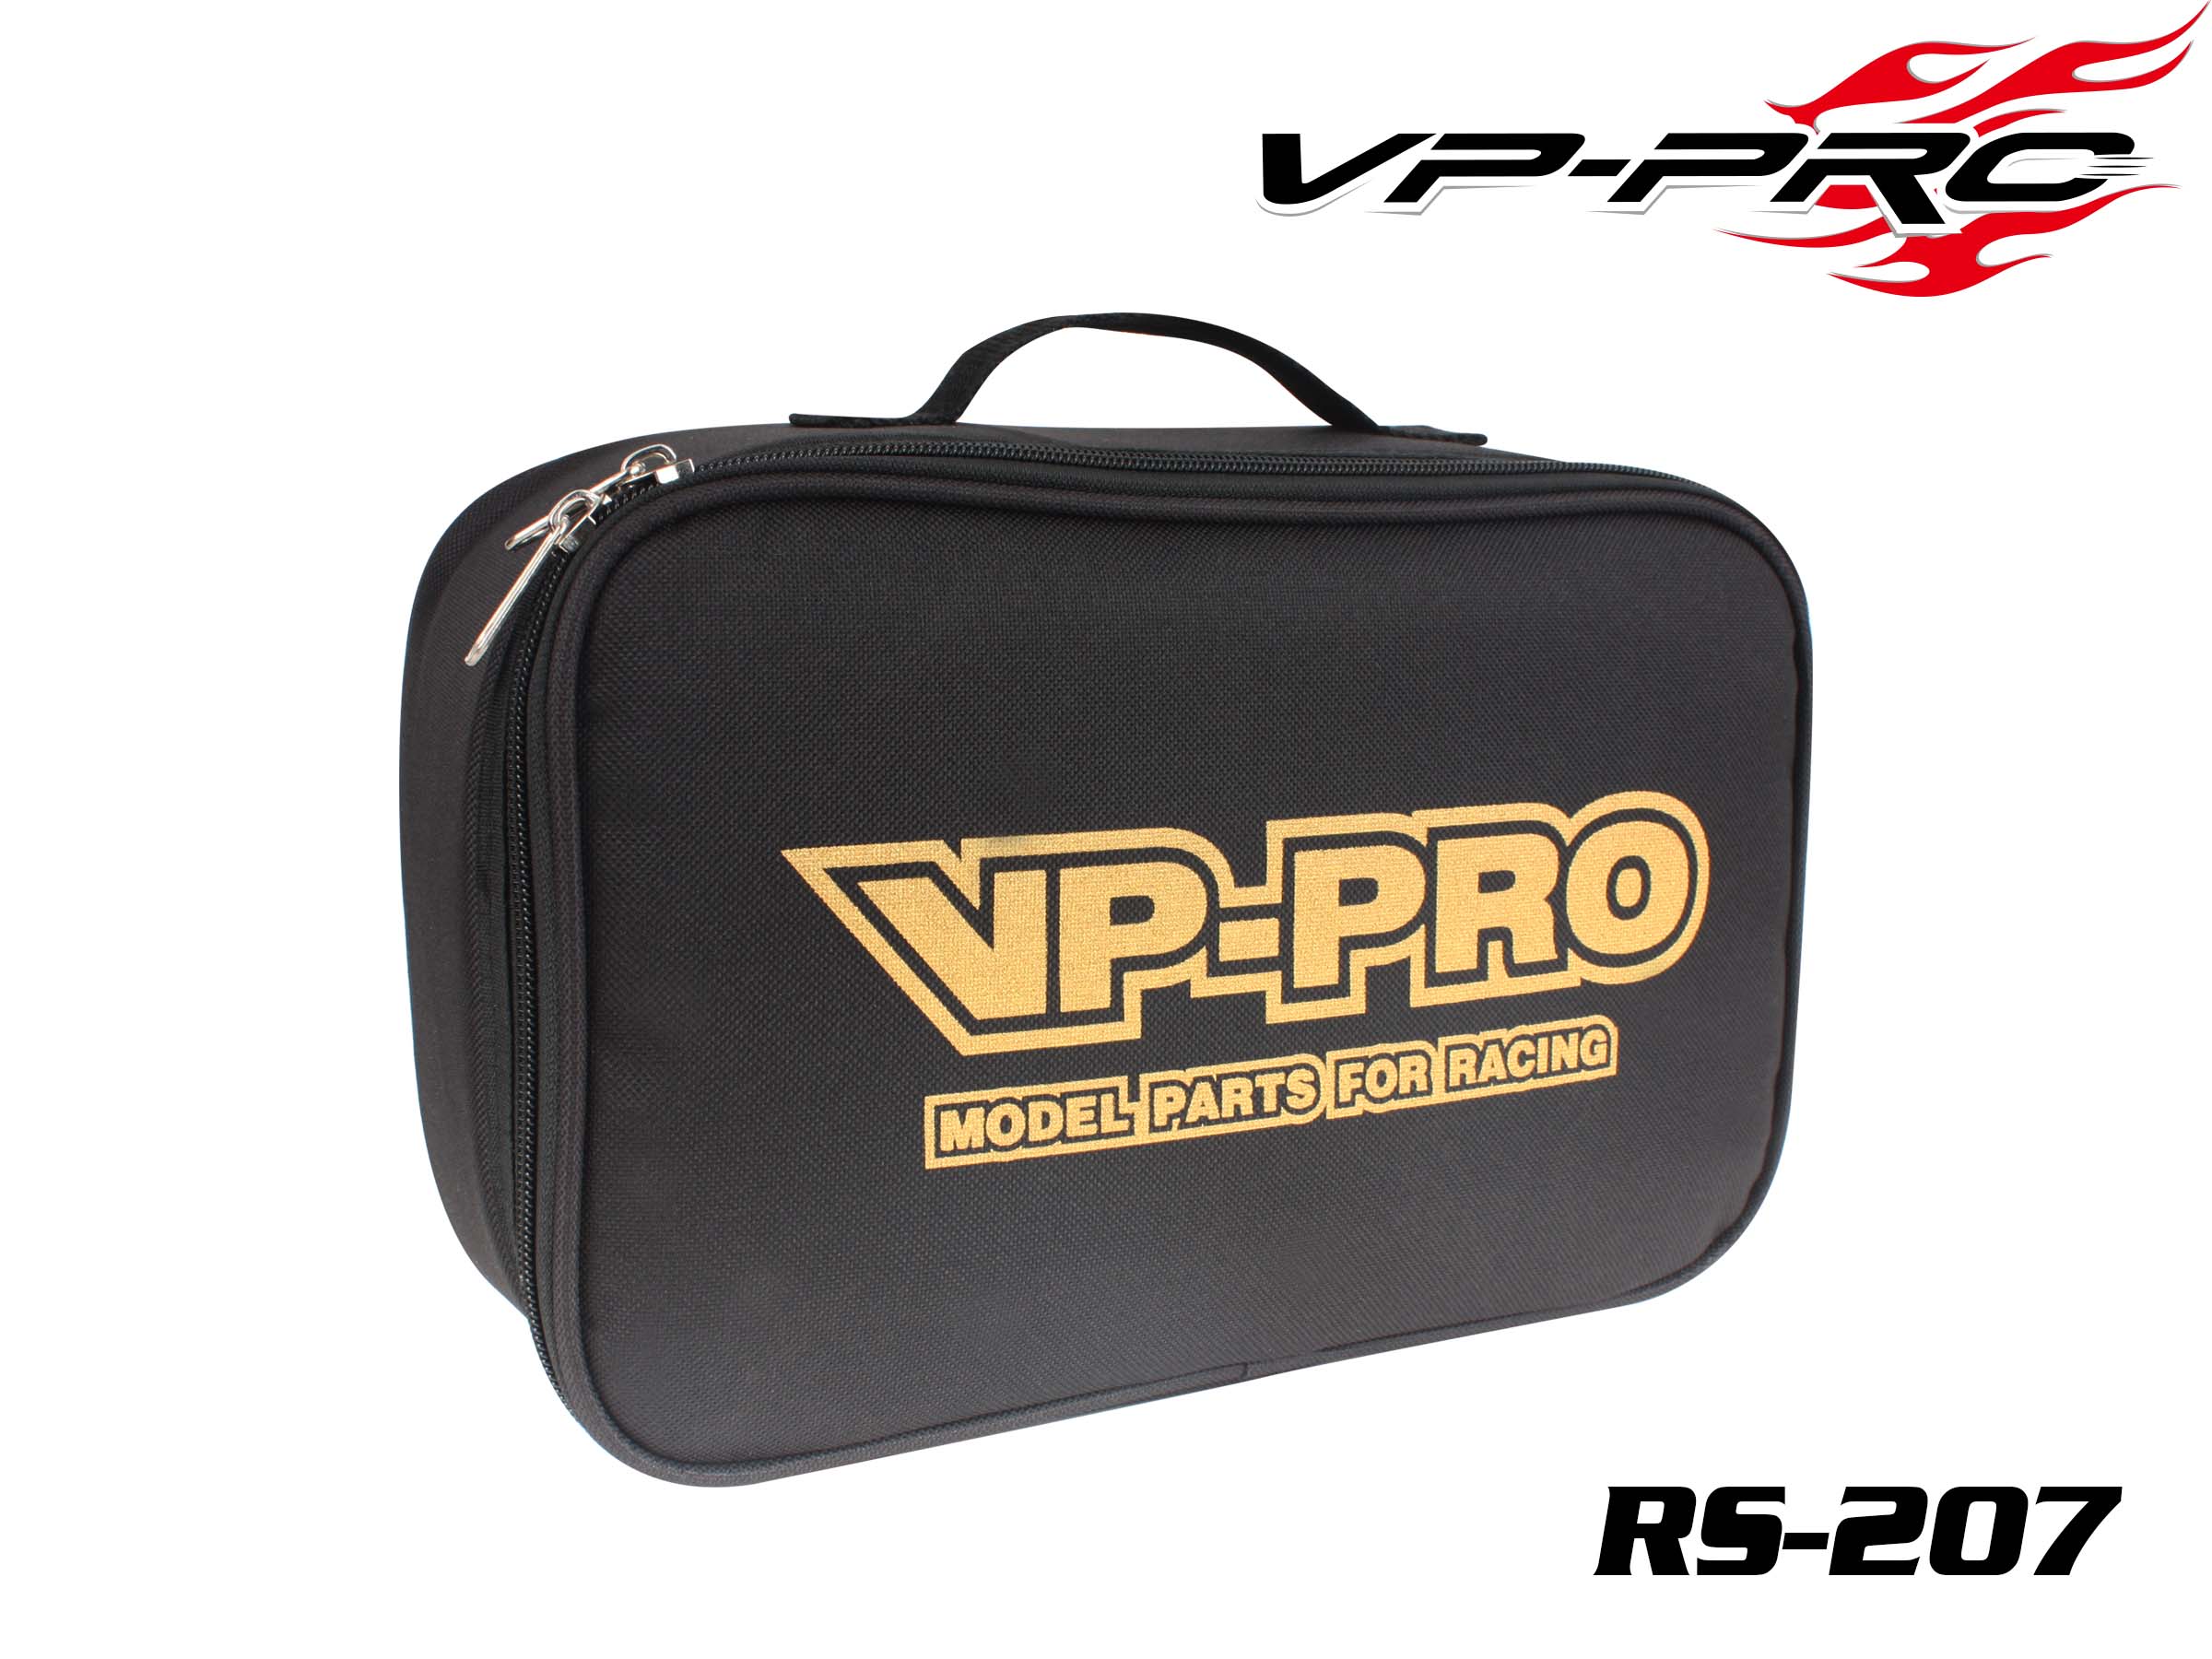 VP-Pro Accessories Bag 290x190x100mm